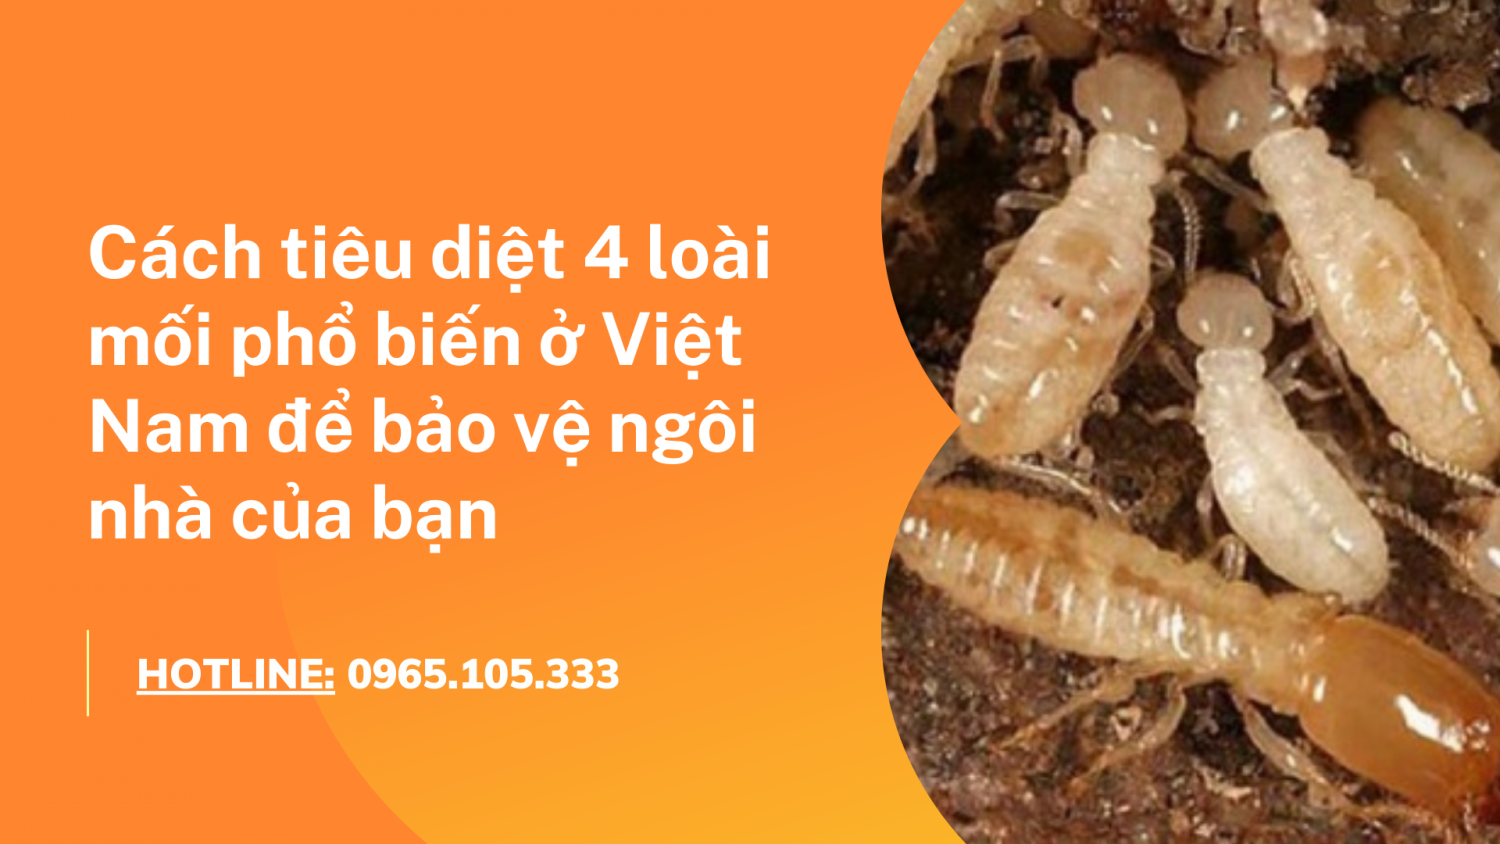 Cách tiêu diệt 4 loài mối phổ biến ở Việt Nam để bảo vệ ngôi nhà của bạn